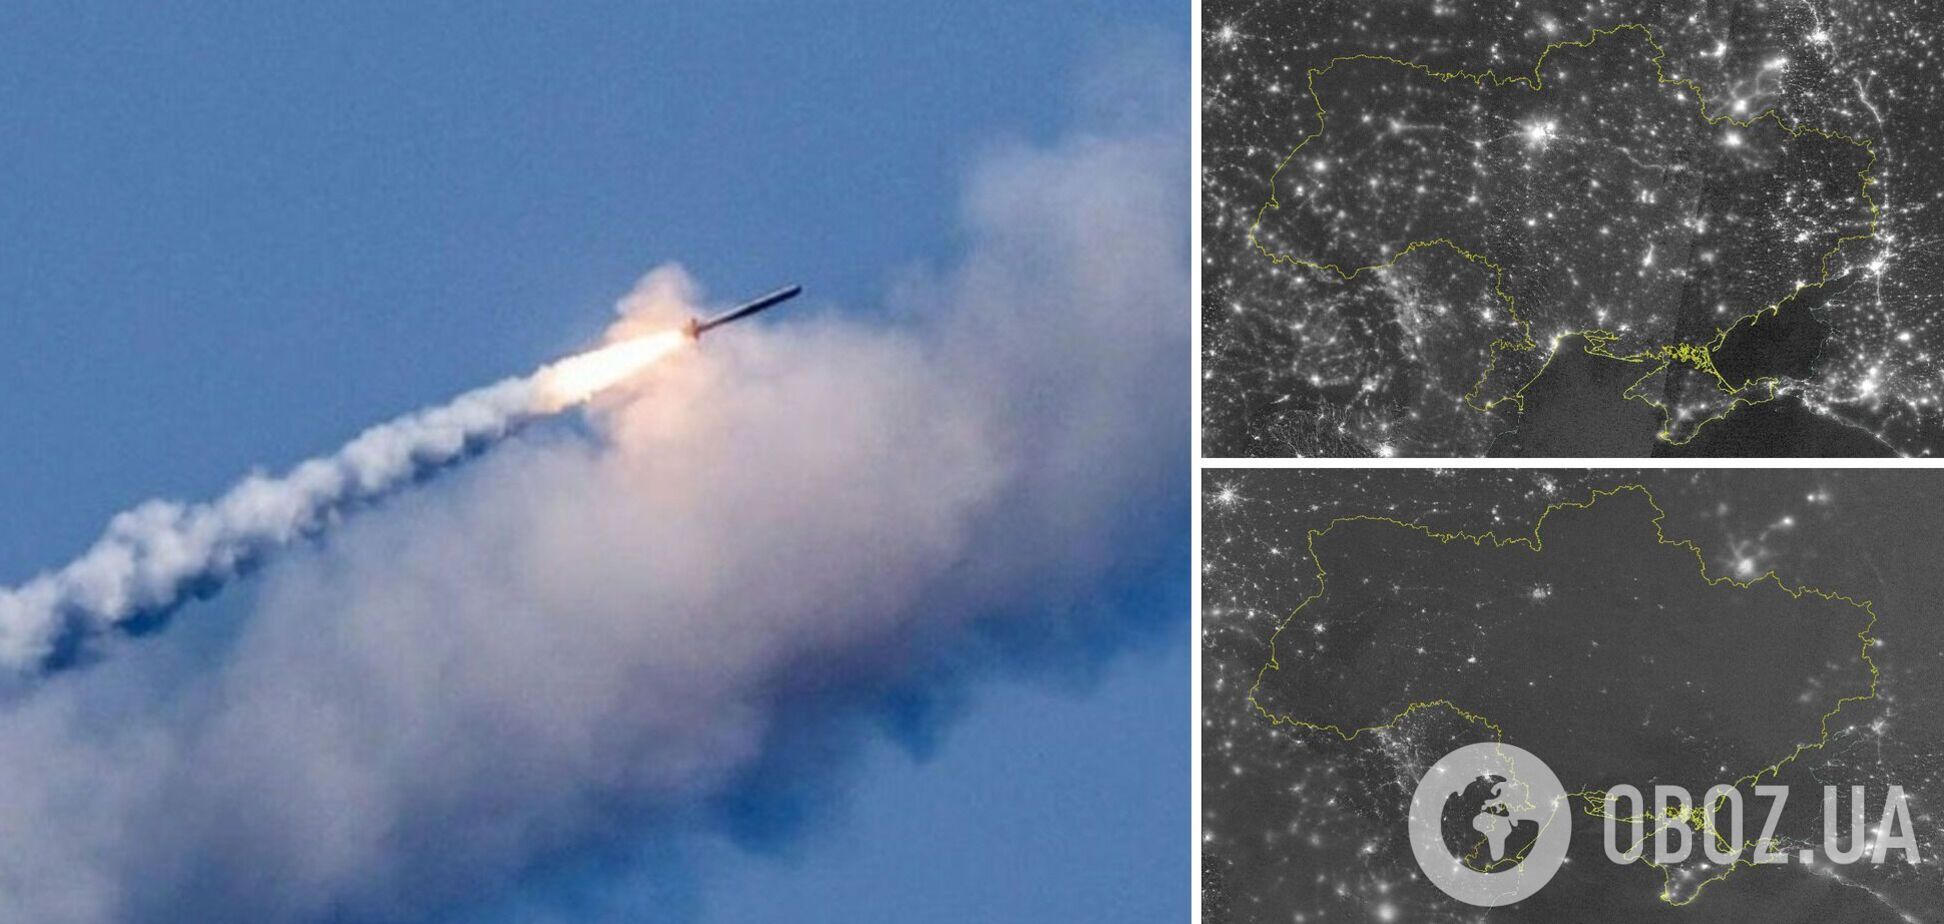 'Ми все витримаємо, а окупантам доведеться відповісти': супутникове фото нічної України після масованого ракетного удару РФ 